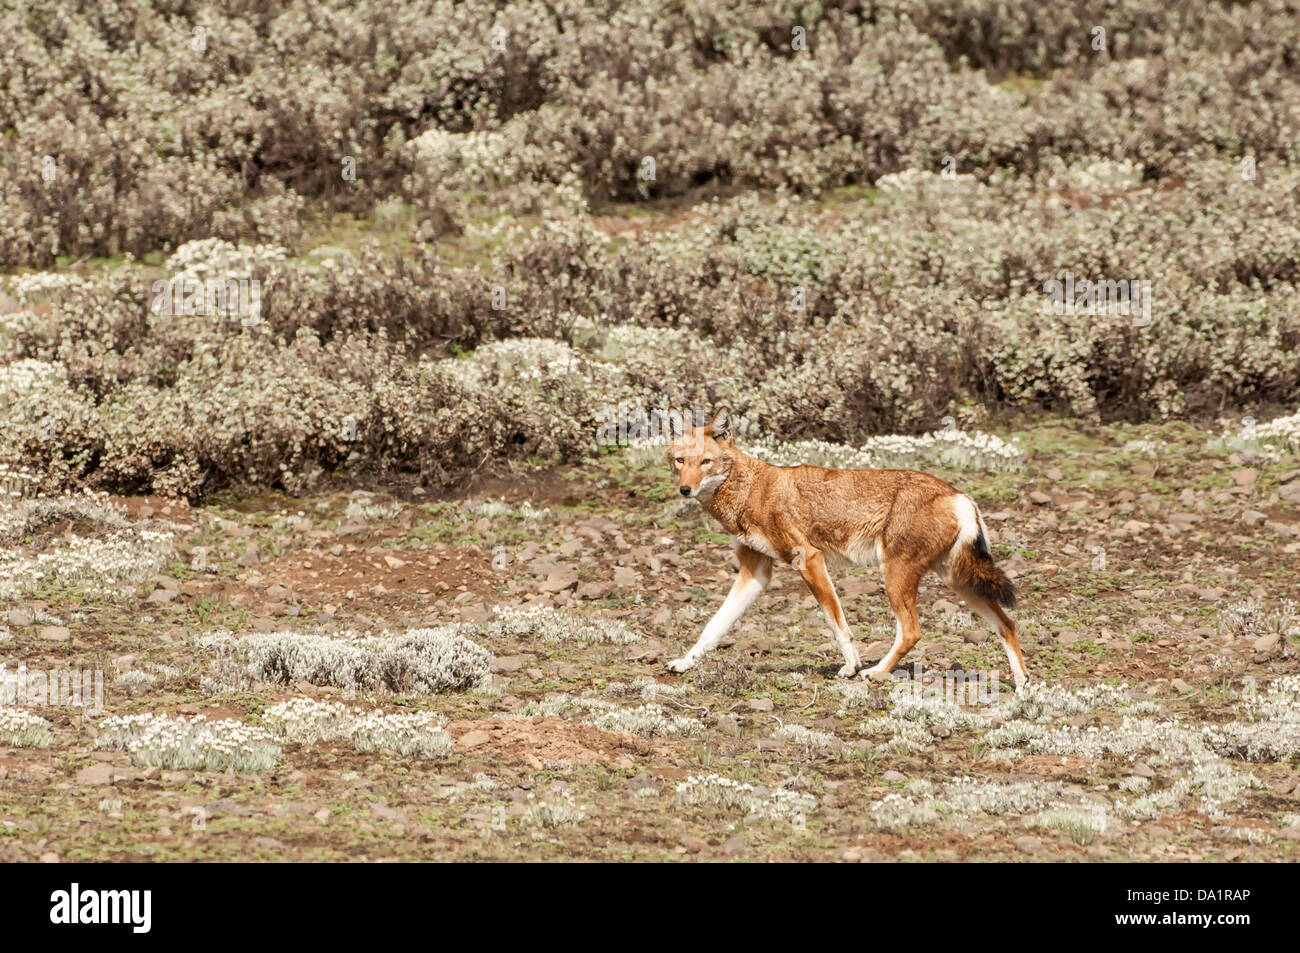 Ethiopian Wolf (Canis simensis), Bale mountains national park, Ethiopia Stock Photo